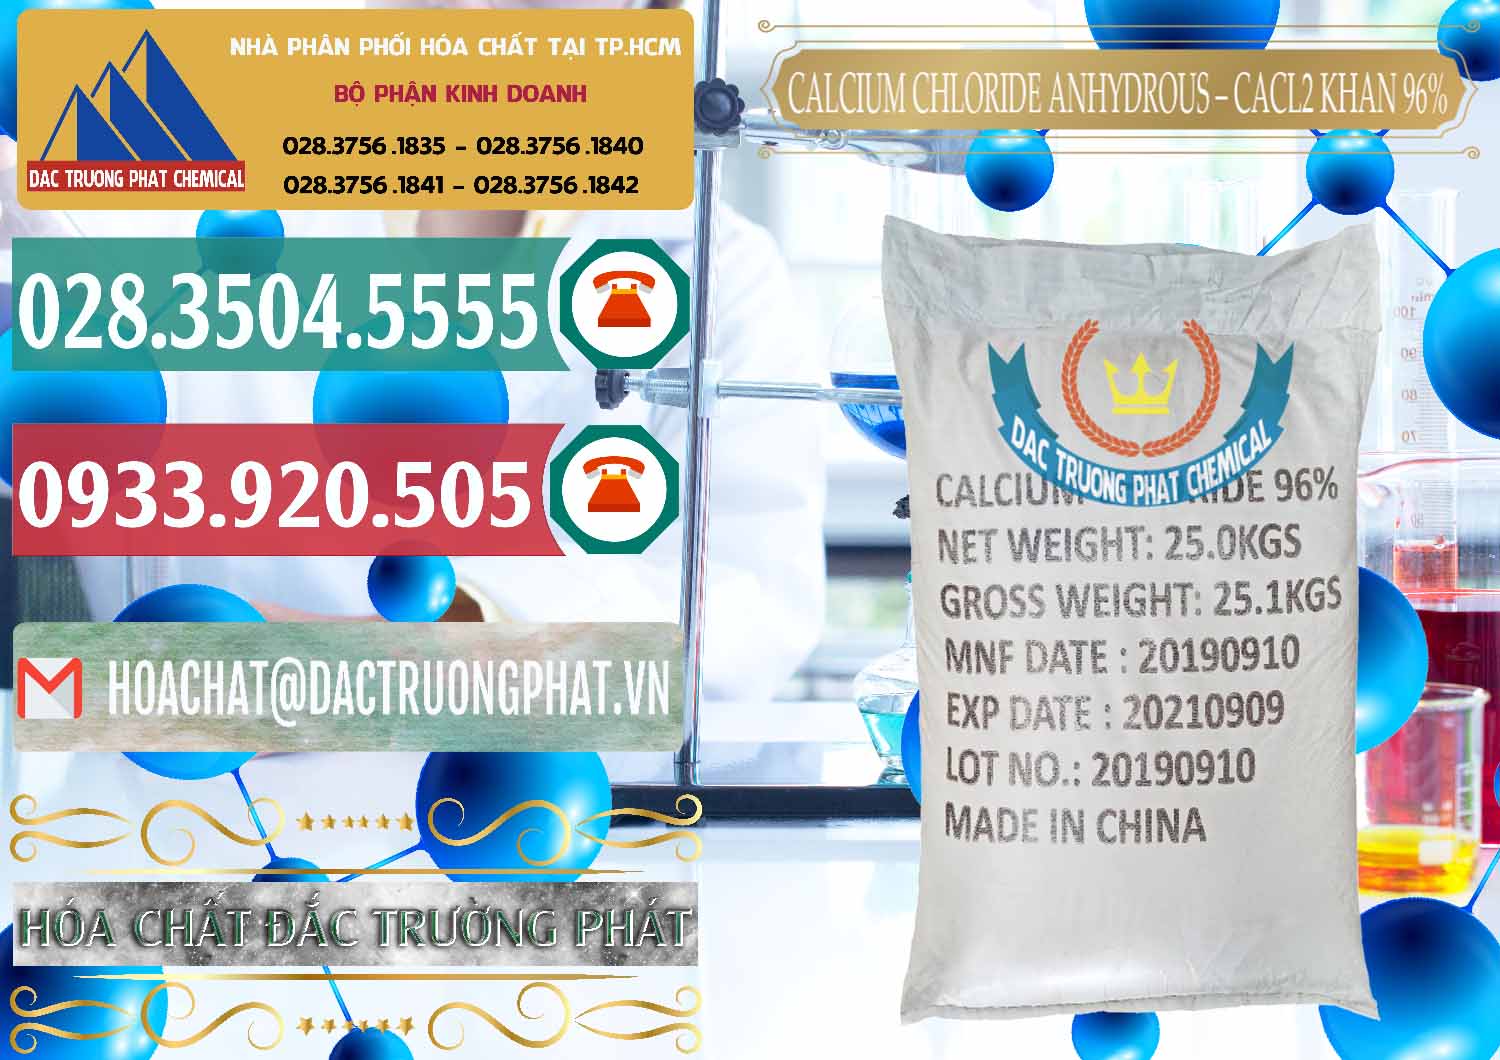 Nơi chuyên bán và cung cấp CaCl2 – Canxi Clorua Anhydrous Khan 96% Trung Quốc China - 0043 - Công ty chuyên nhập khẩu và cung cấp hóa chất tại TP.HCM - muabanhoachat.vn